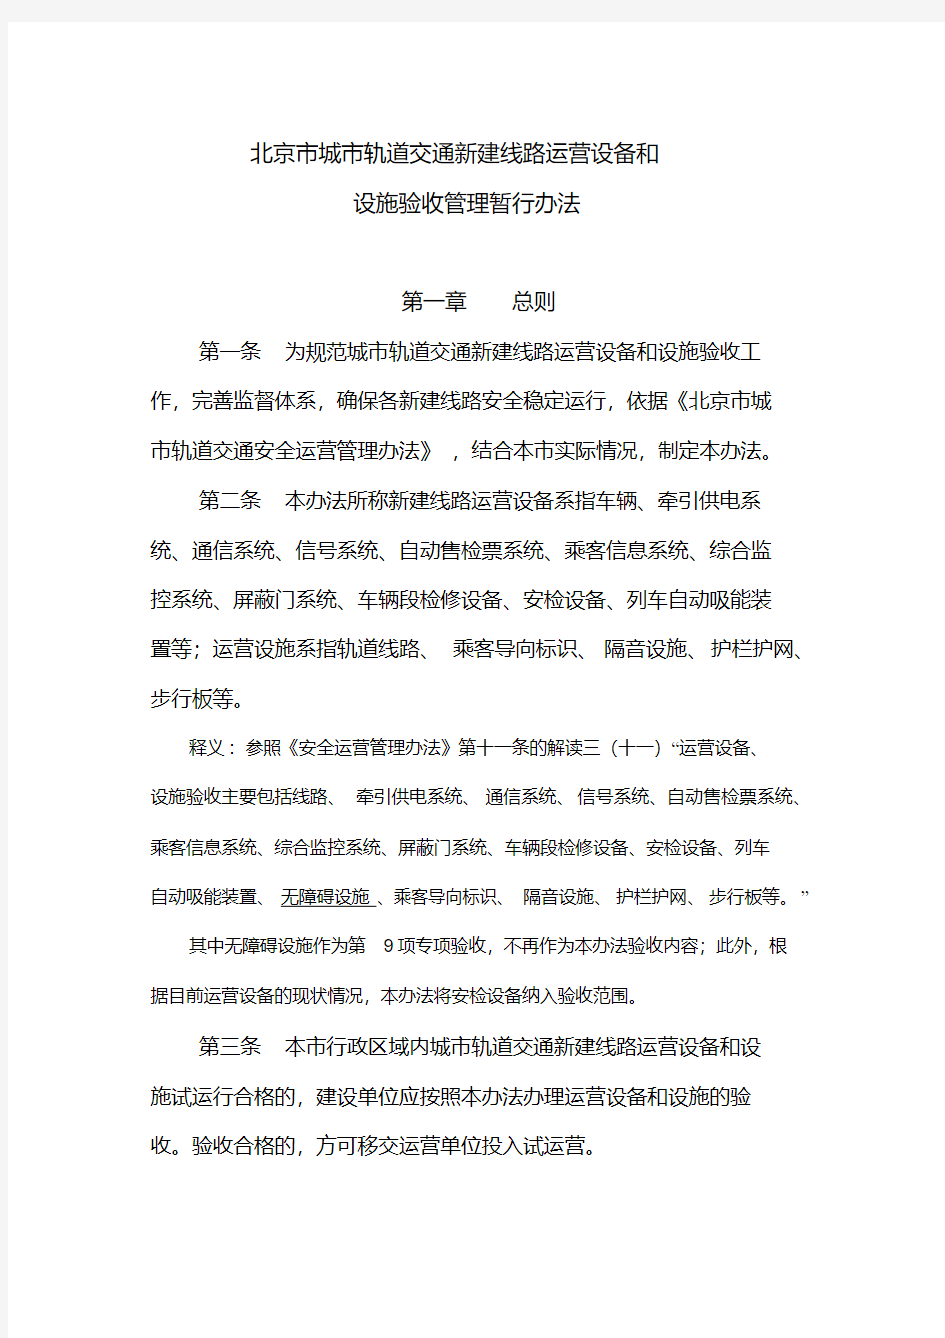 北京市城市轨道交通新线运营设备和设施验收暂行办法(20200521215053)